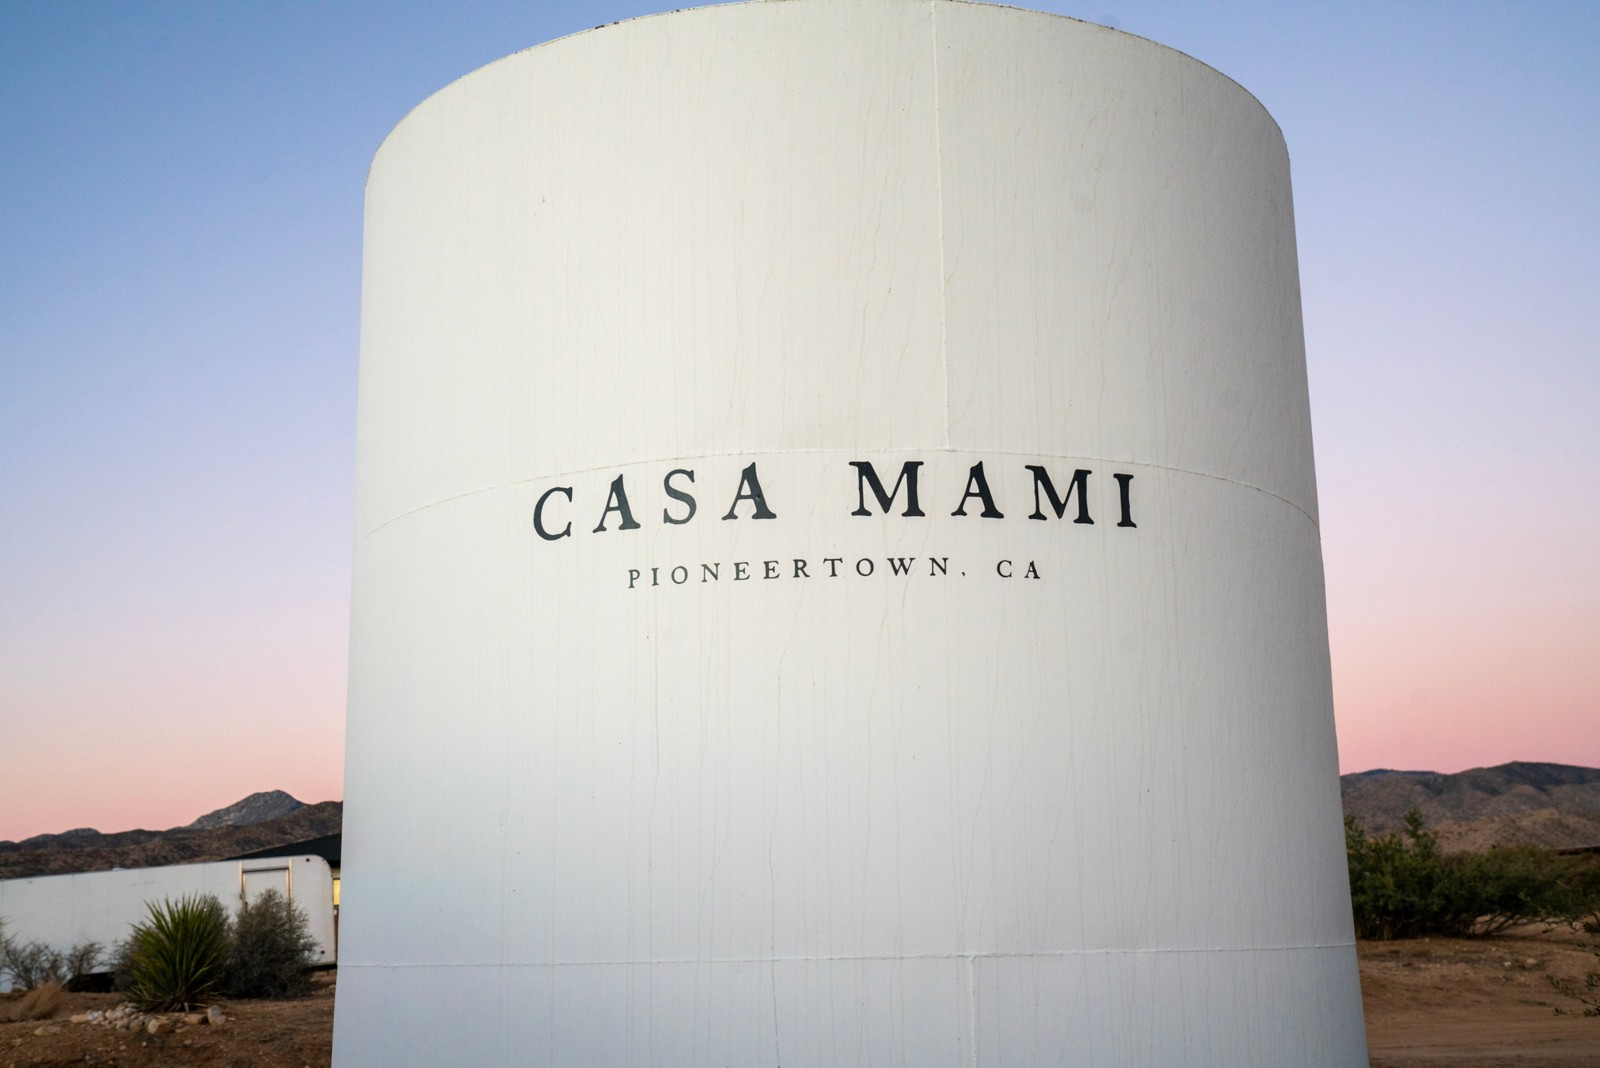 Un grand réservoir d'eau avec le nom de l'entreprise de Carlos Naude, Casa Mami, écrit dessus.